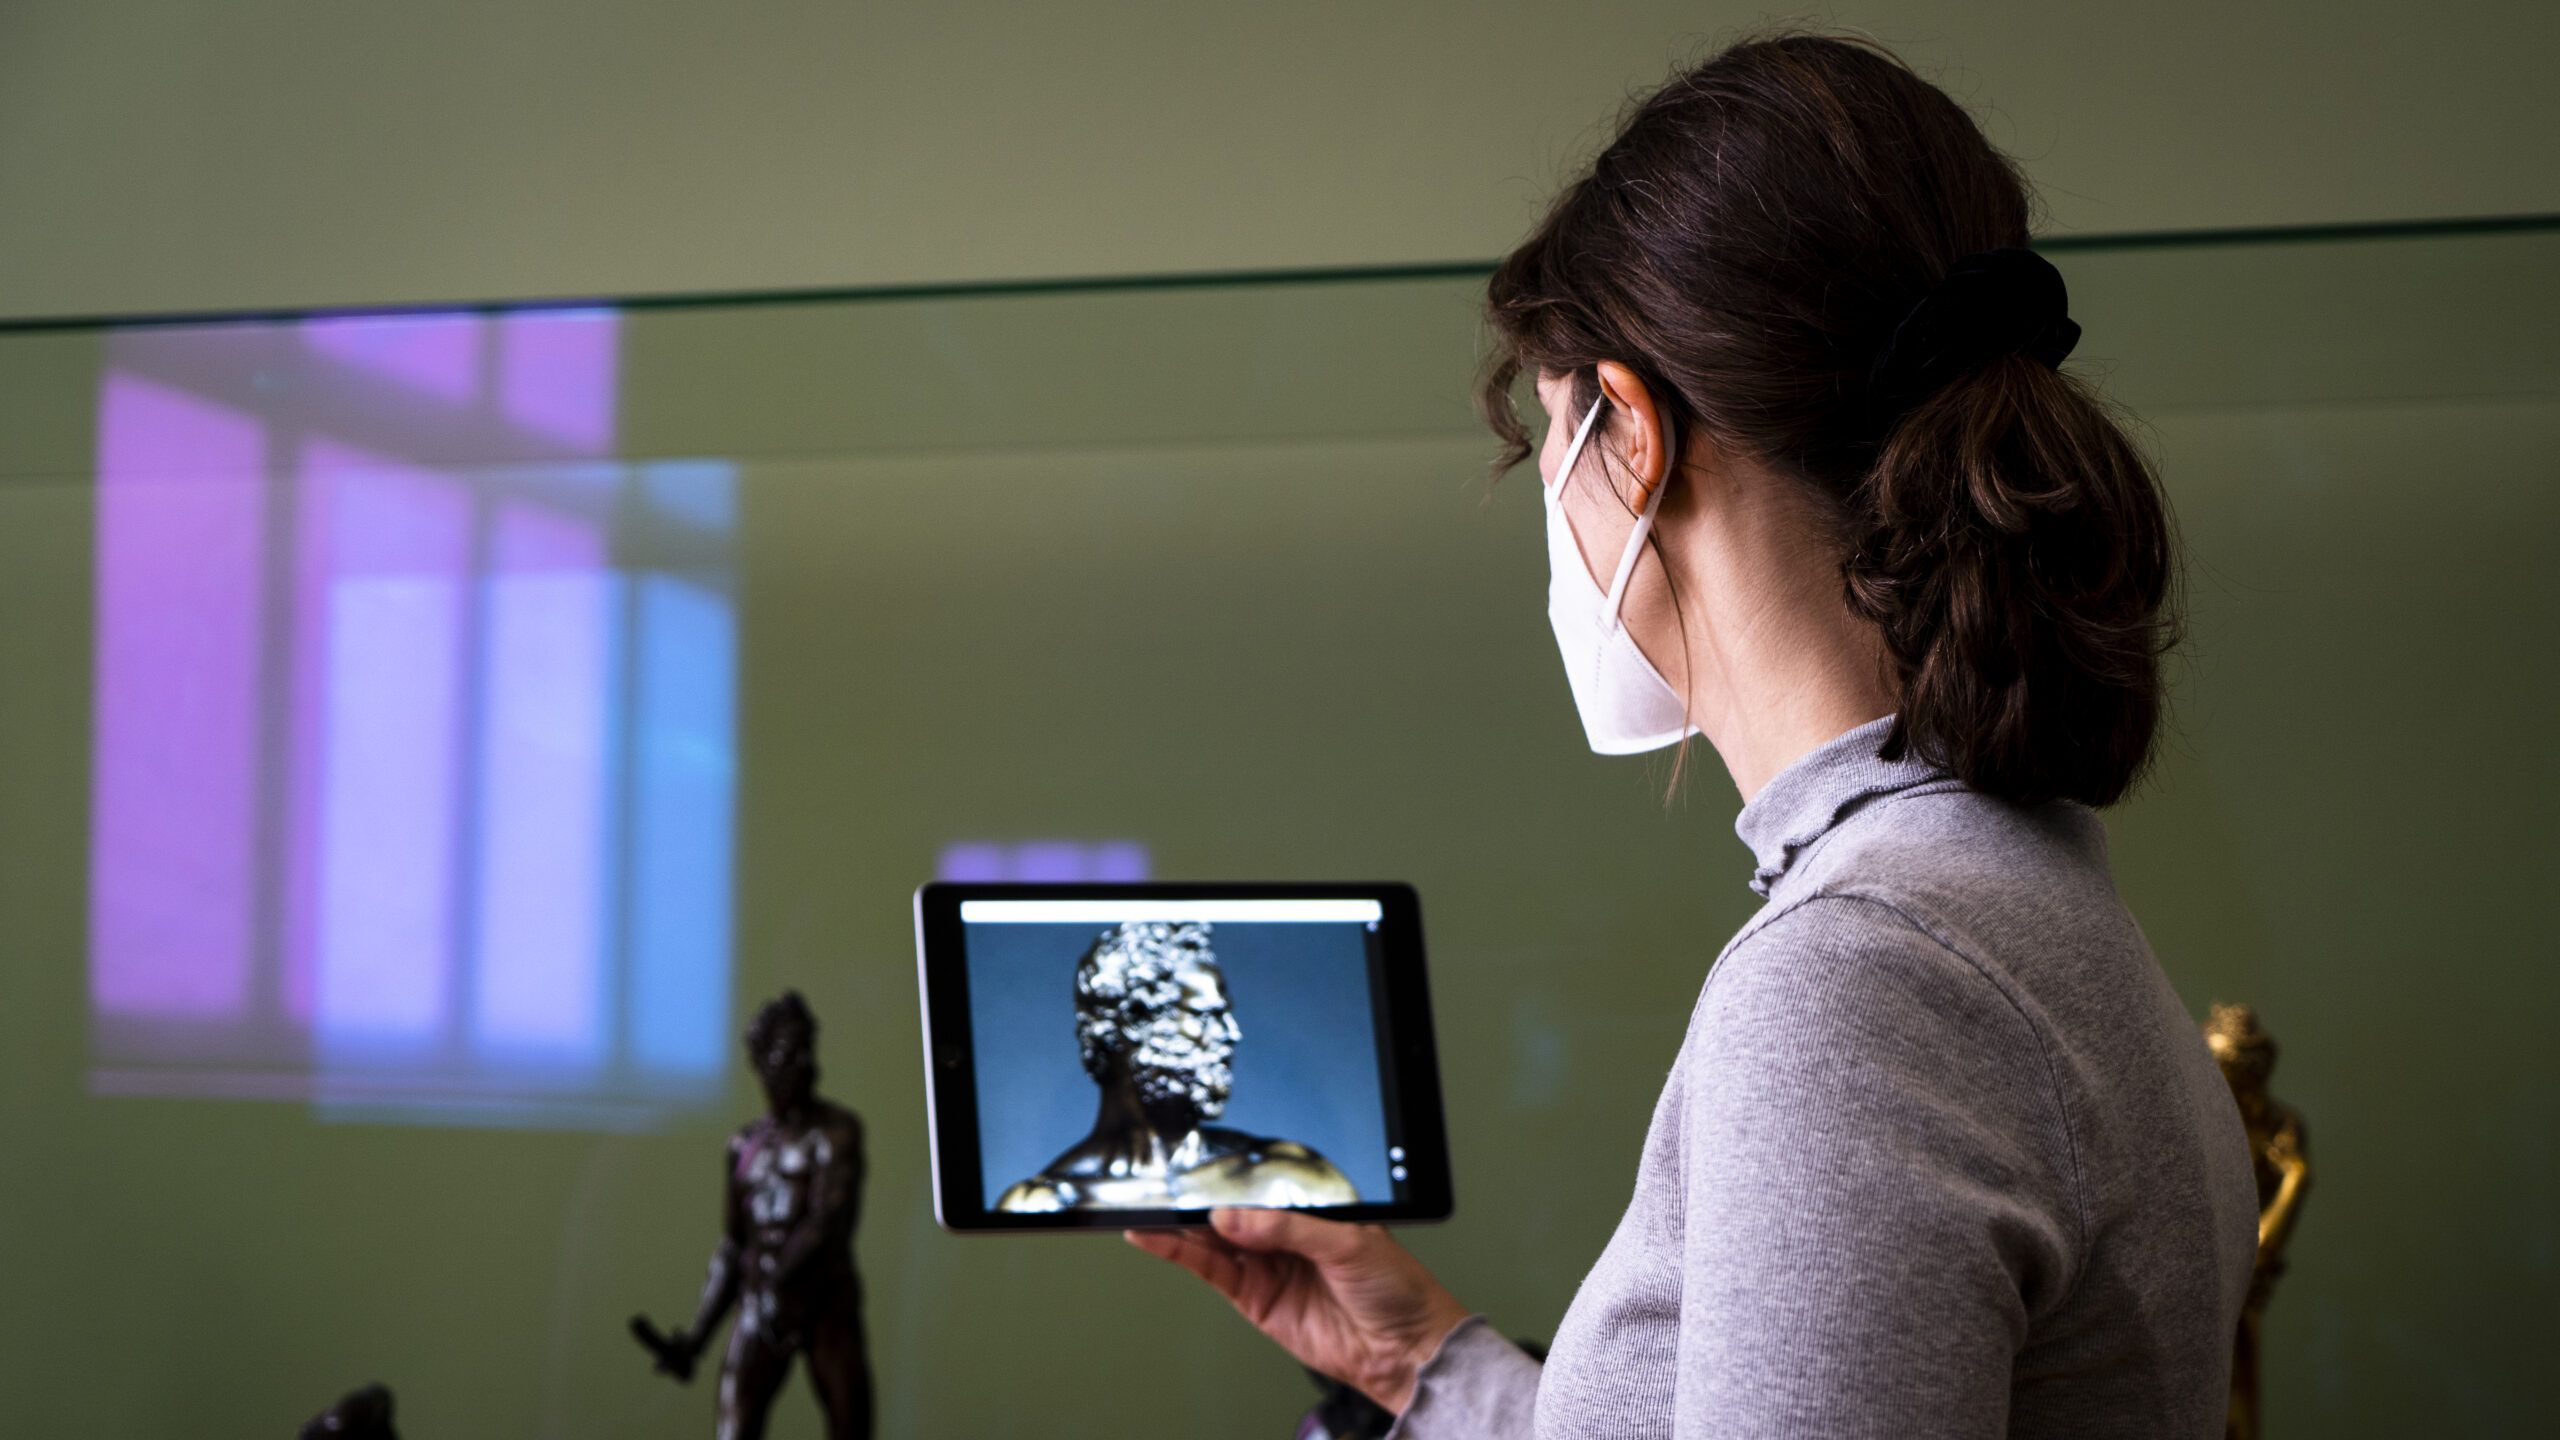 Erforschen, vertiefen, begleiten! Die neu konzipierten Sammlungen Online der Staatlichen Museen zu Berlin bieten mit den neuen Vermittlungs-Modulen Themen und Touren eine zeitgemäße digitale Begleitung zum Erkunden und Entdecken der Sammlungen vor Ort, unterwegs oder zu Hause.